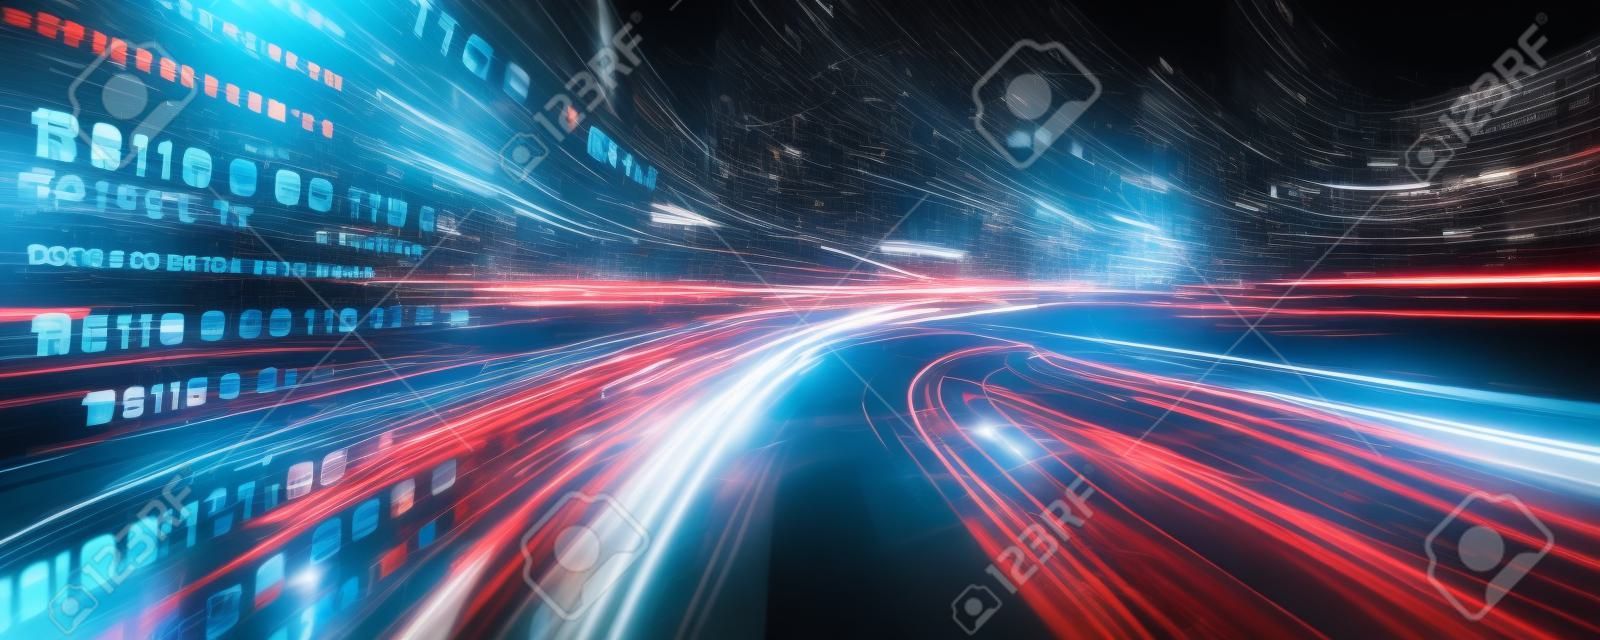 Fluxo de dados digitais na estrada com motion blur para criar visão de transferência de velocidade rápida. Conceito de transformação digital futura, inovação disruptiva e metodologia de negócios ágil.